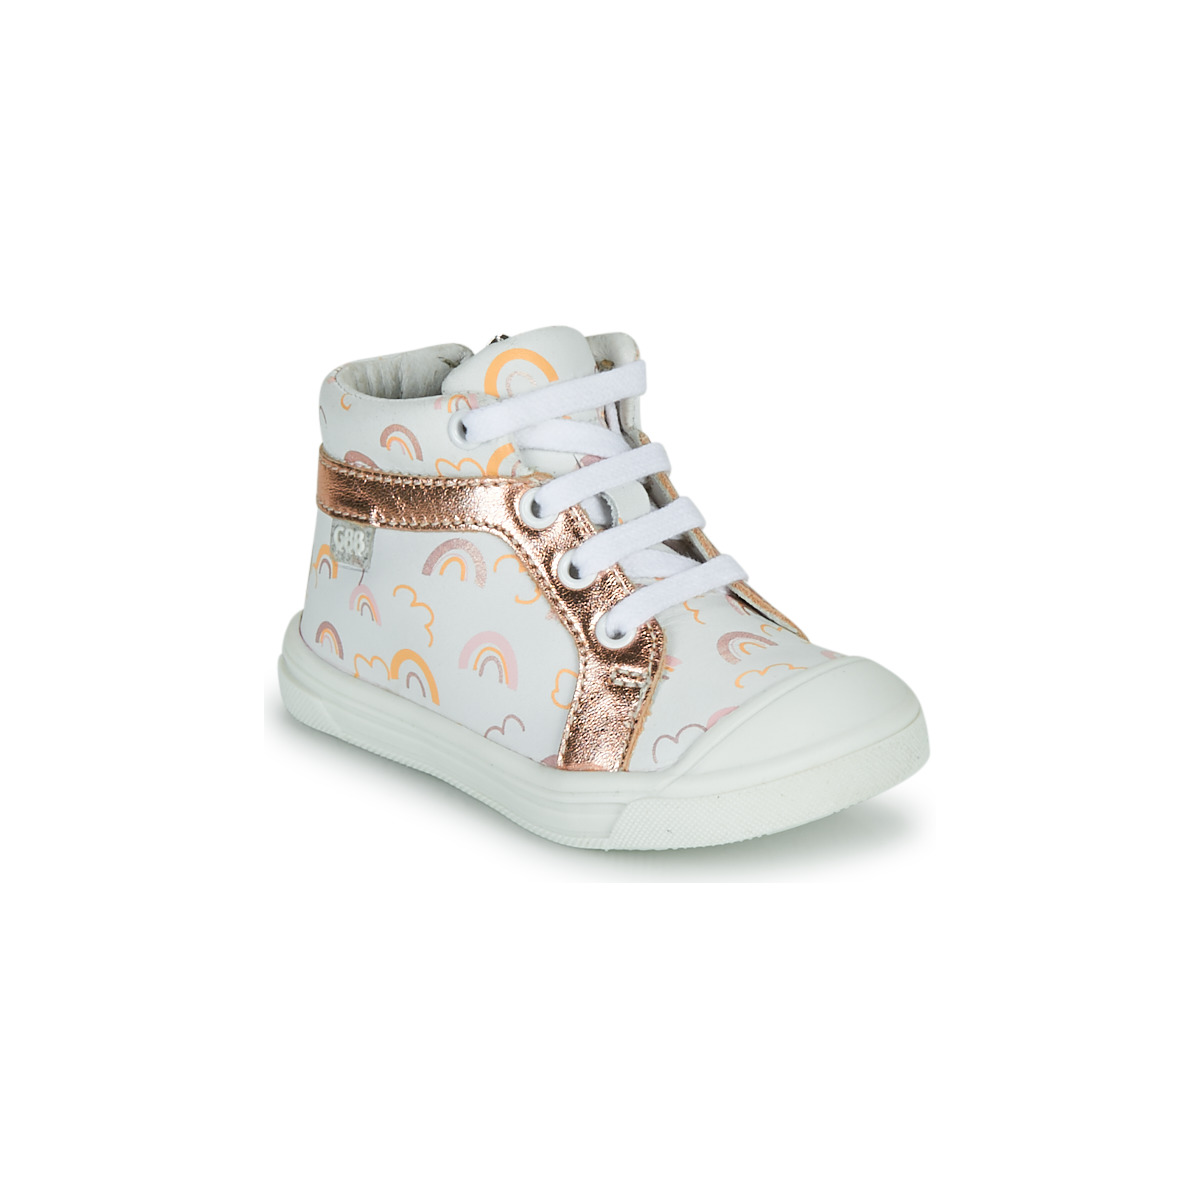 Sapatos Rapariga Sapatilhas de cano-alto GBB LEOZIA Branco / Rosa